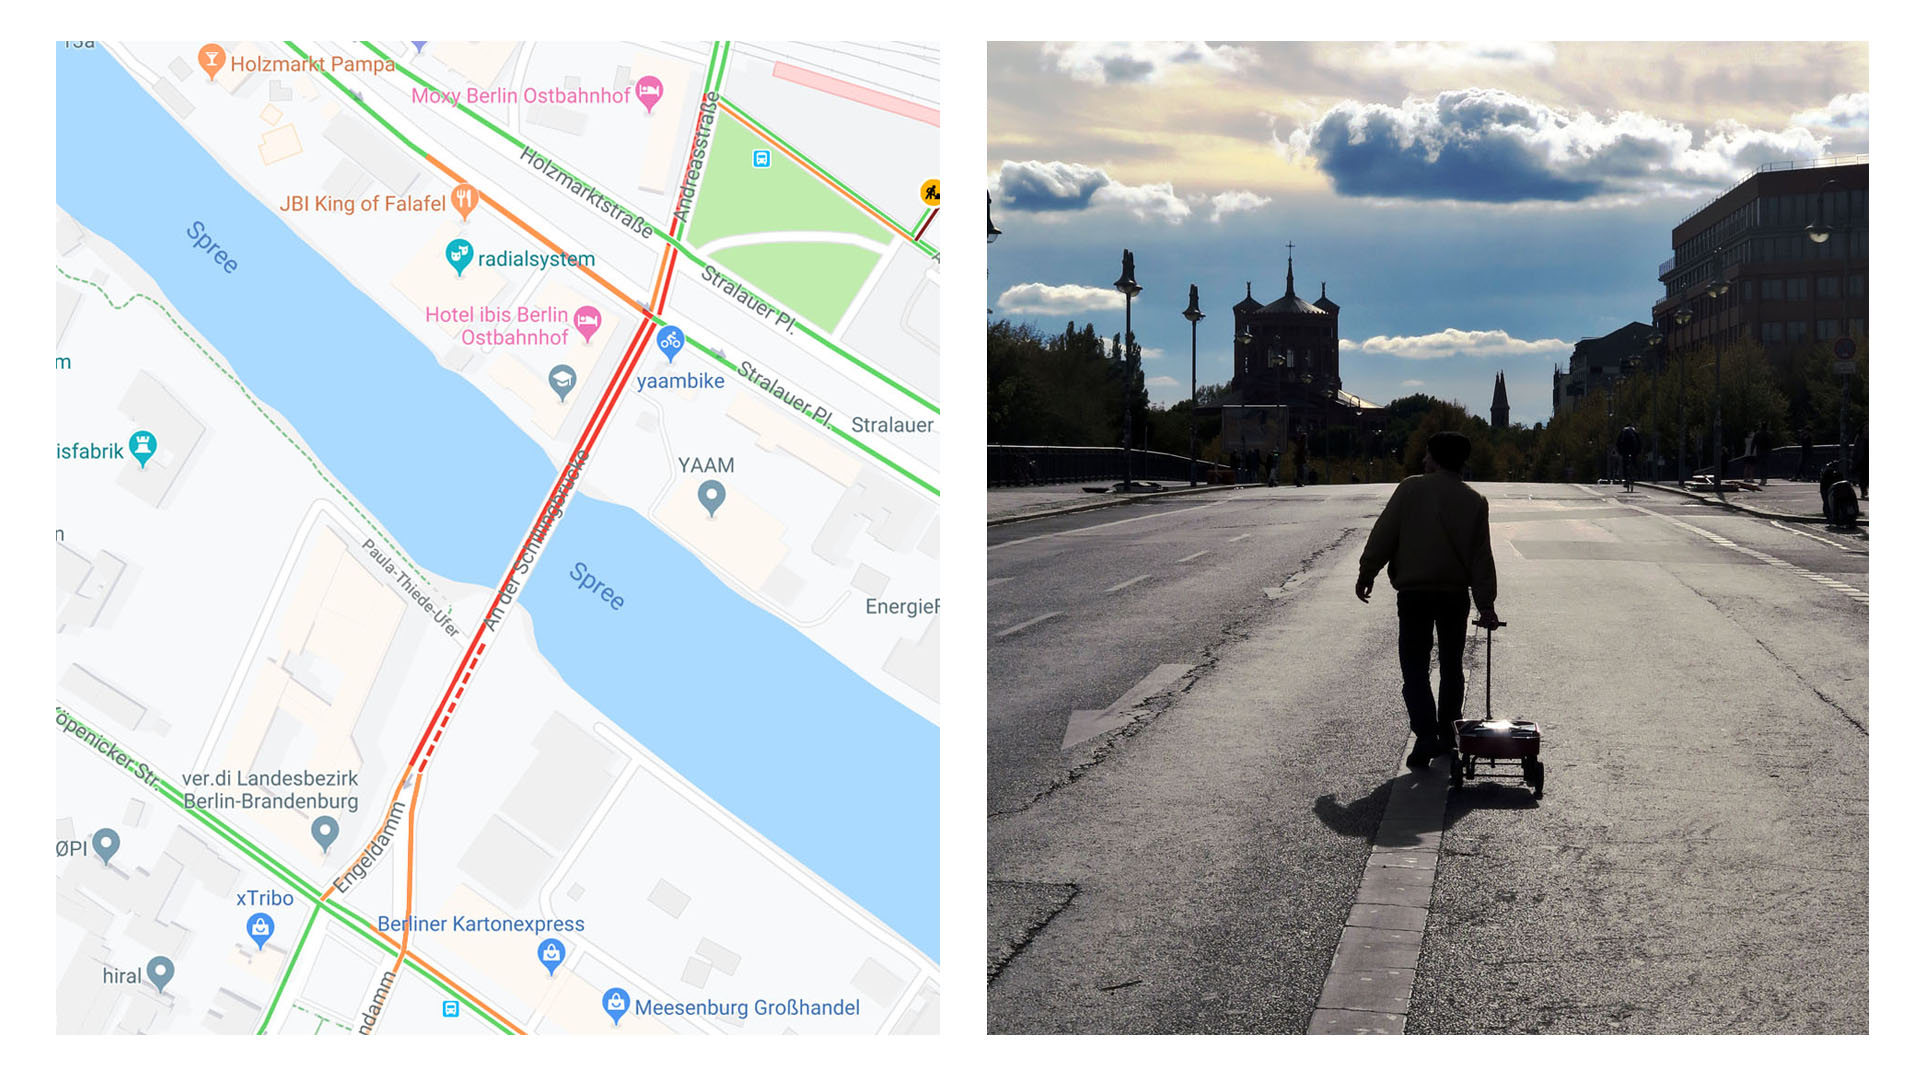 Sur un pont de Berlin, une personne tire un petit charriot rempli de téléphones allumés pour faire croire à Google qu’il y a un embouteillage. Du coup, cette personne se retrouve seule sur la chaussée, sans aucune voiture.